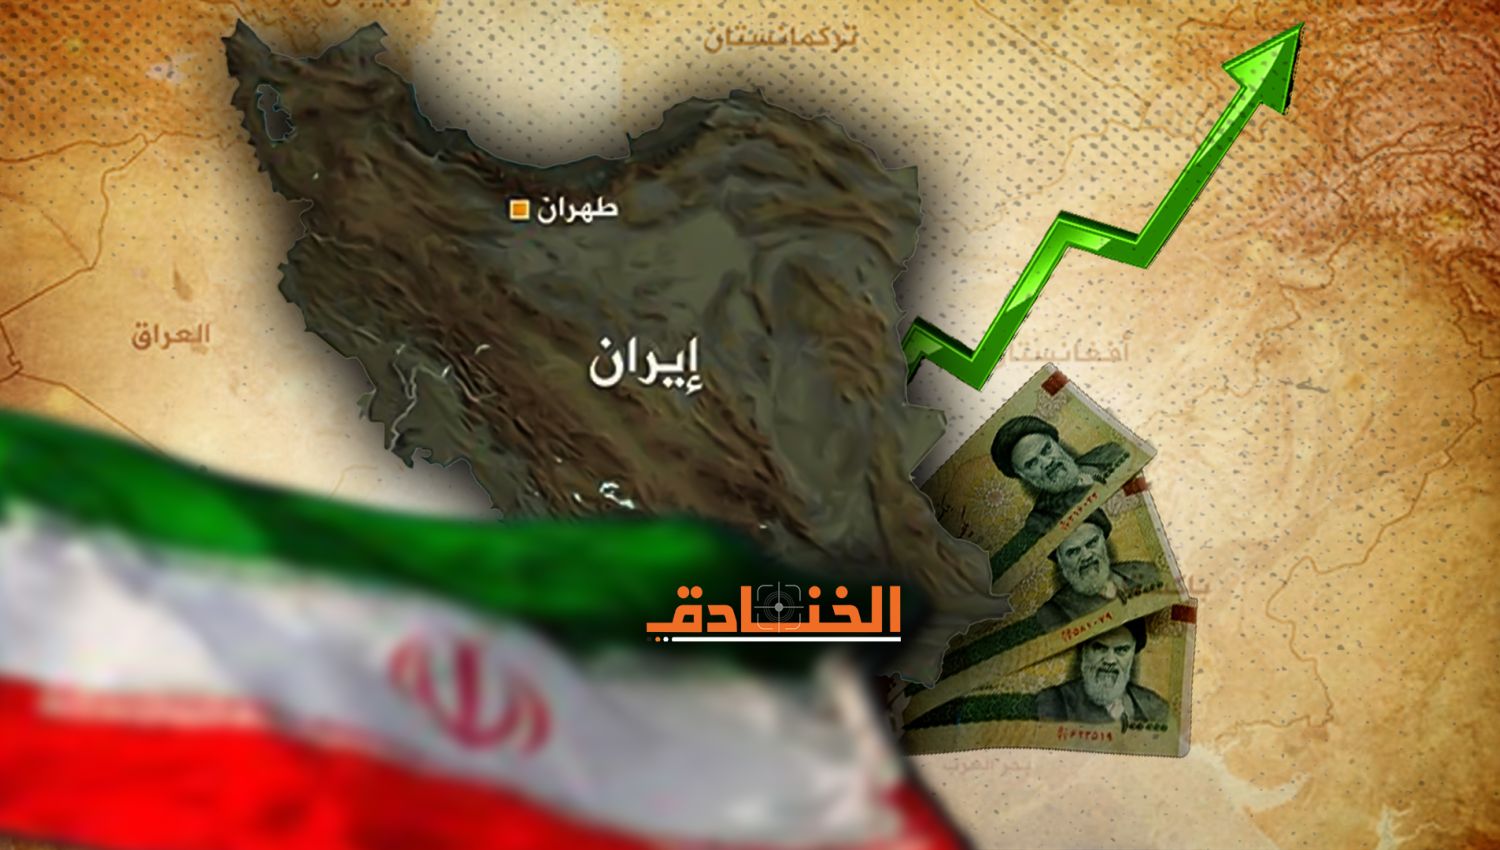 الإيكونوميست: رغم العقوبات اقتصاد إيران لم ينهار!